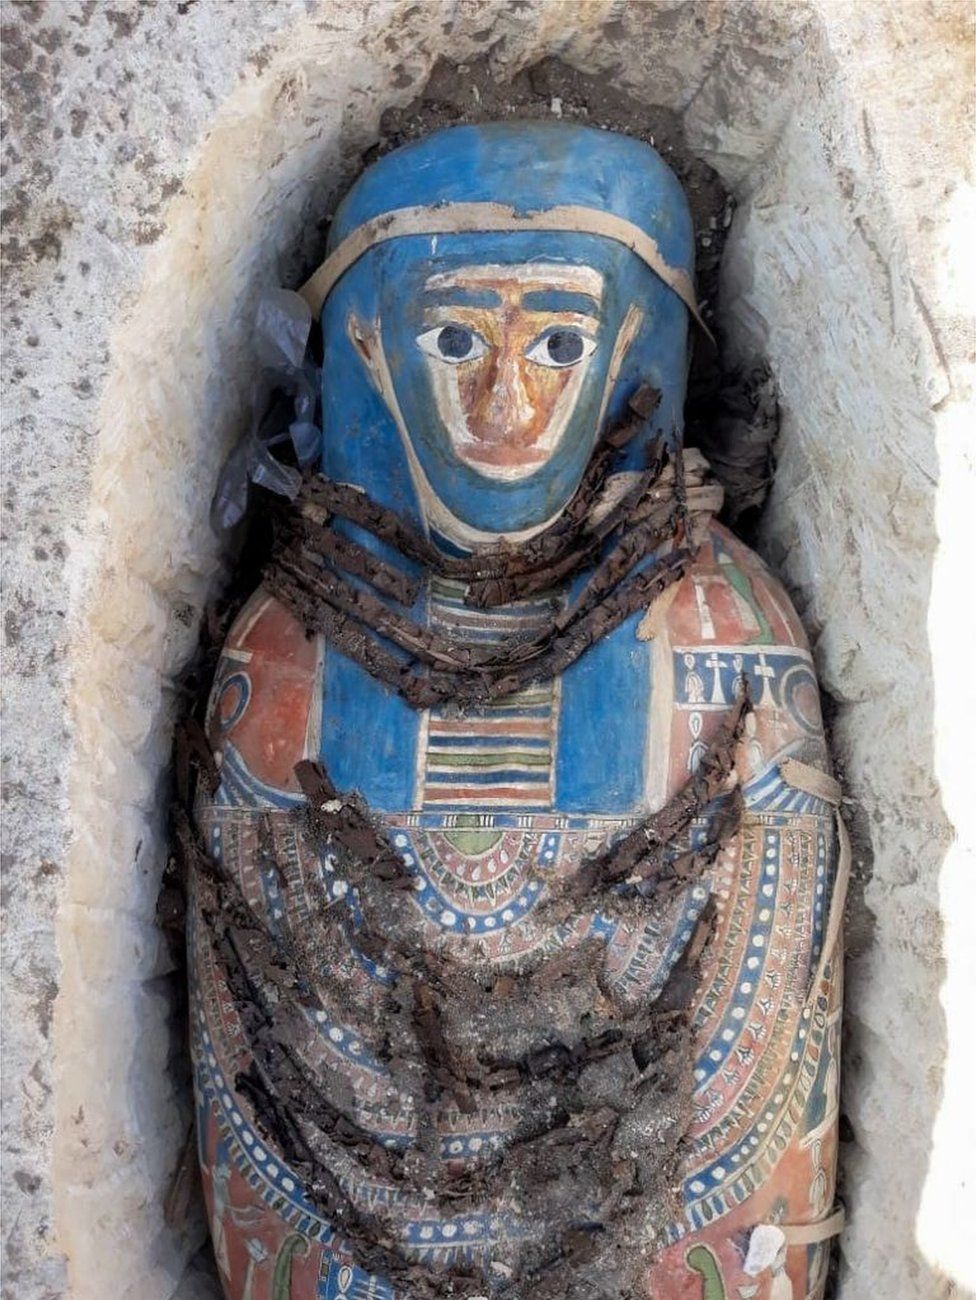 A pharaonic-era mummy is seen in Giza, Egypt - 27 November 2018